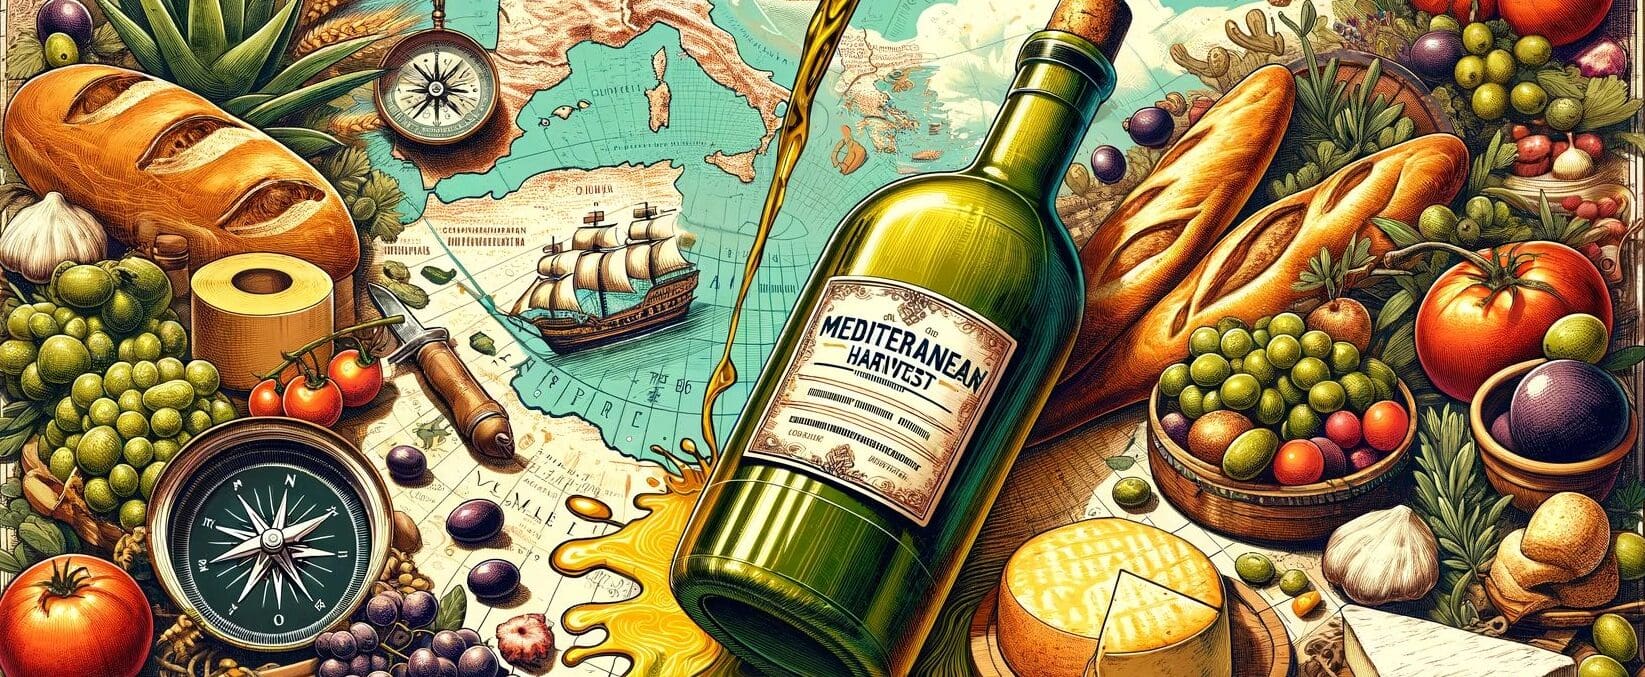 Mediterranean adventure